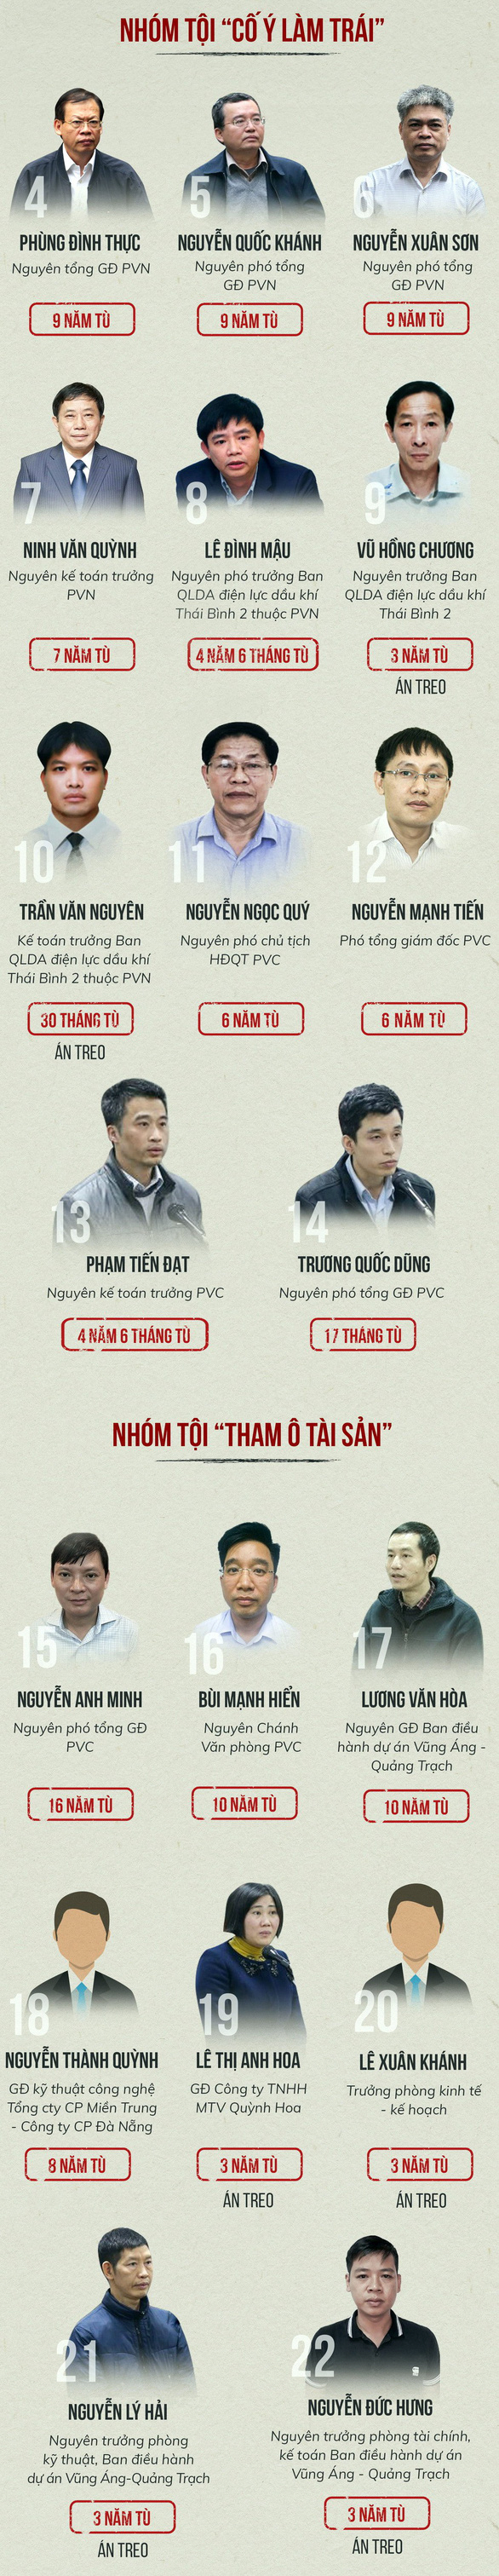 Phạt ông Đinh La Thăng 13 năm tù, ông Trịnh Xuân Thanh tù chung thân - Ảnh 5.